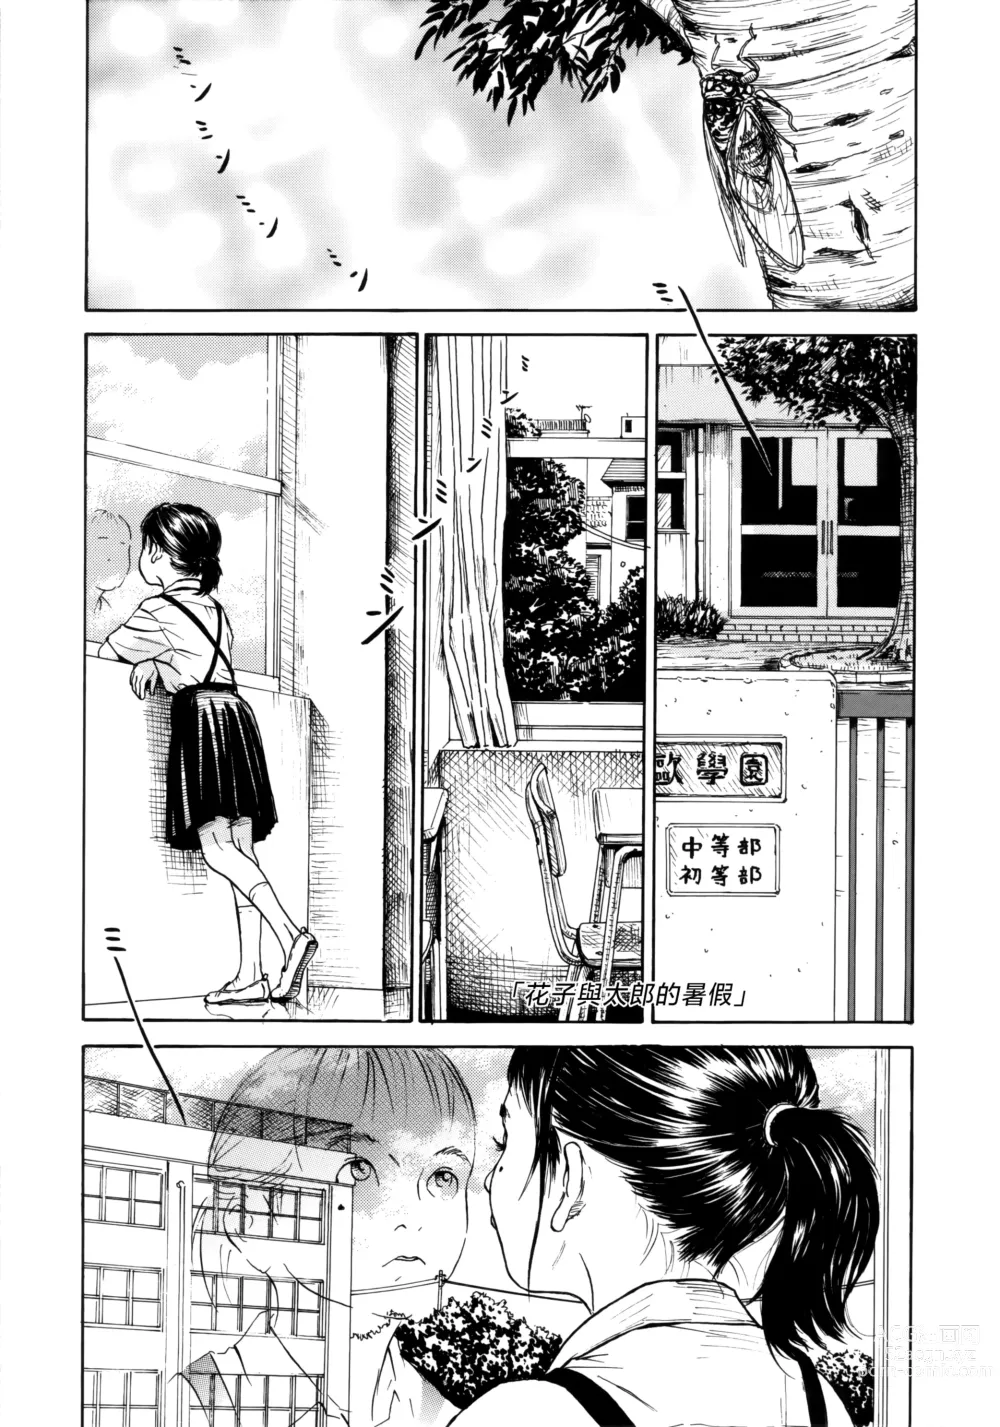 Page 1 of manga Hanako to Tarou no Natsuyasumi